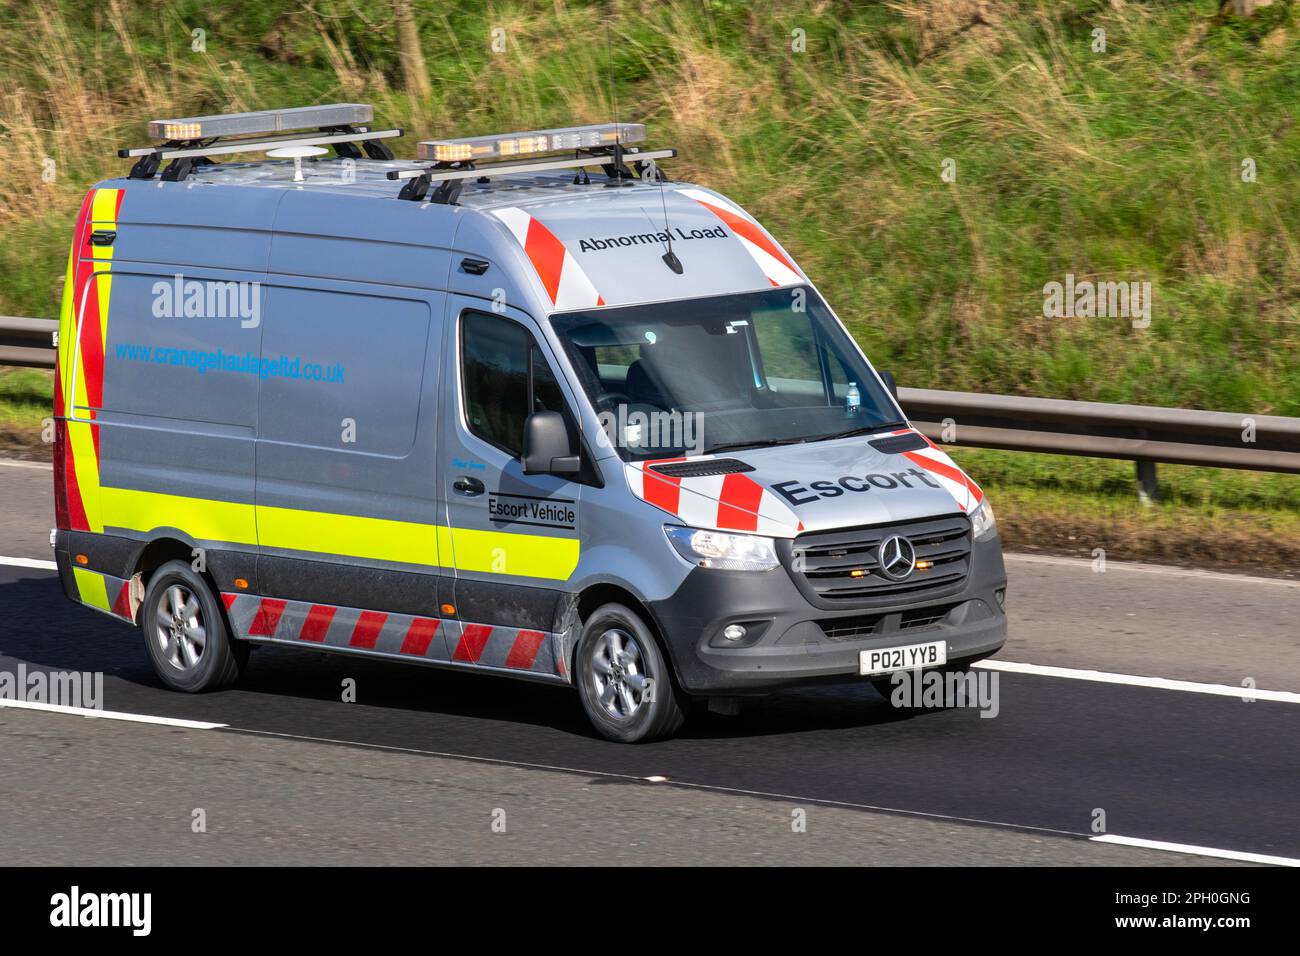 Cranage Haulage Ltd Carichi anomali Escort veicolo. 2021 Mercedes Benz Sprinter 314 CDI IN VIAGGIO PROGRESSIVO sull'autostrada M6 UK Foto Stock